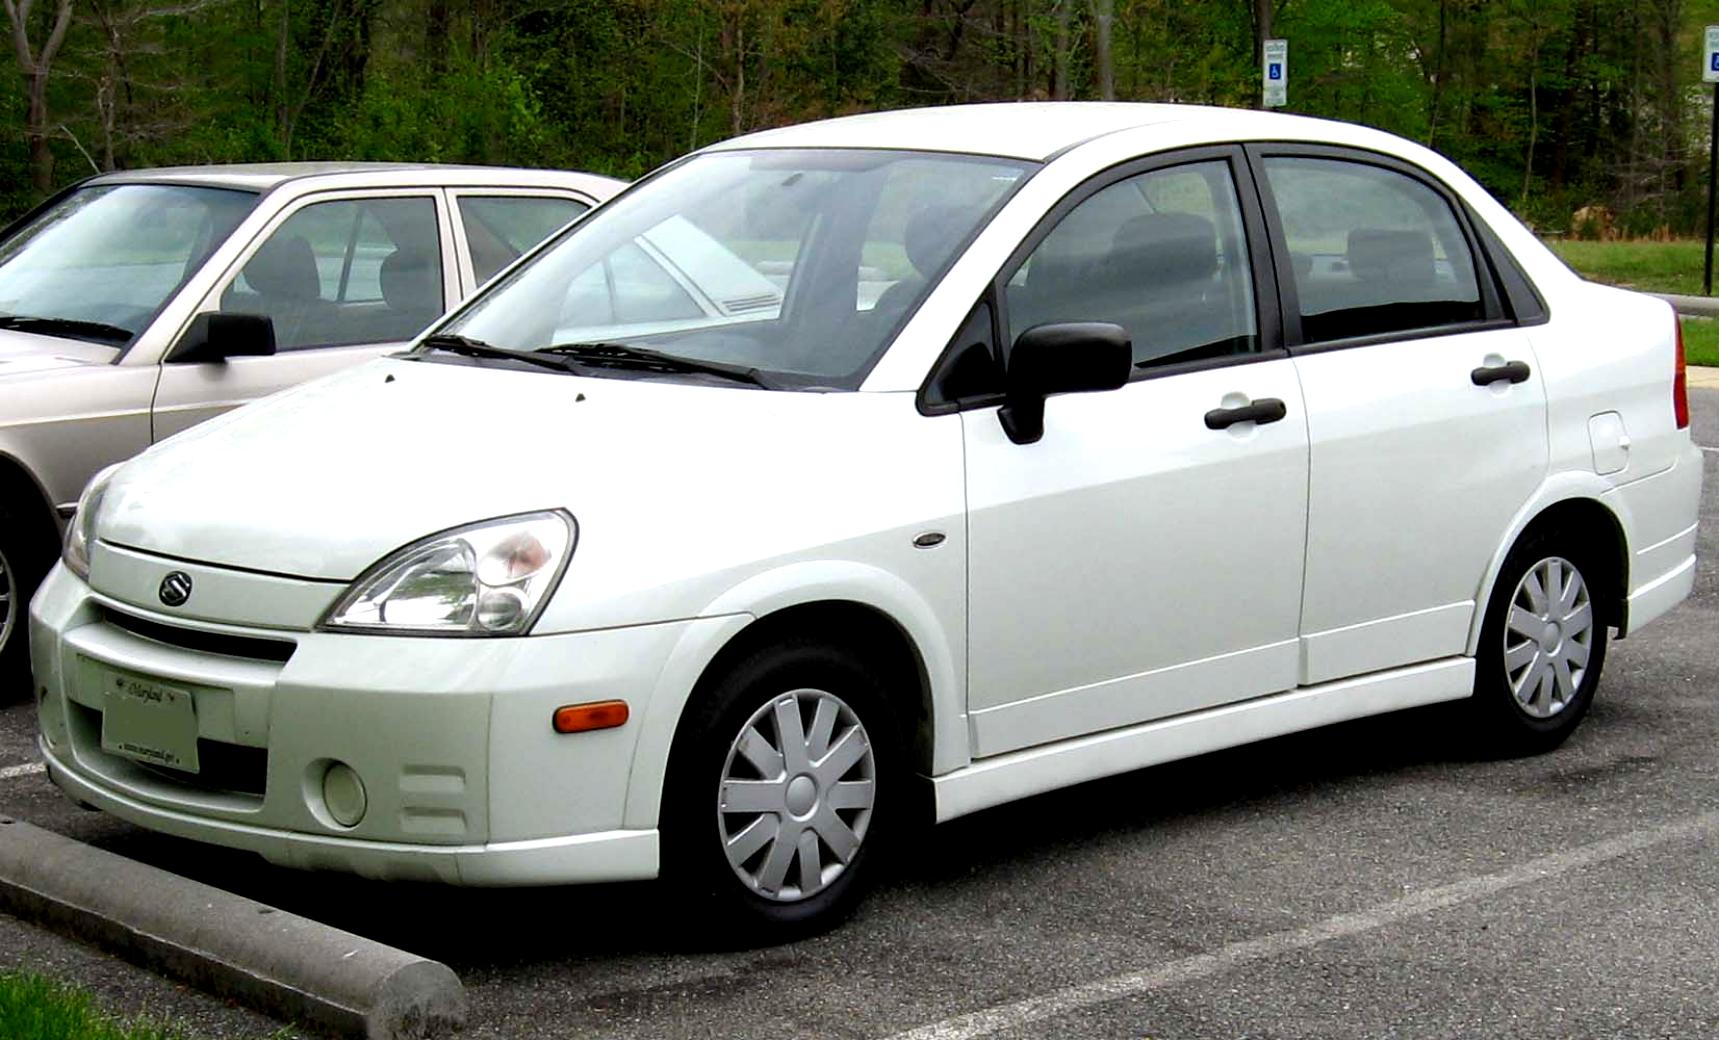 Suzuki Aerio / Liana Sedan 2001 on